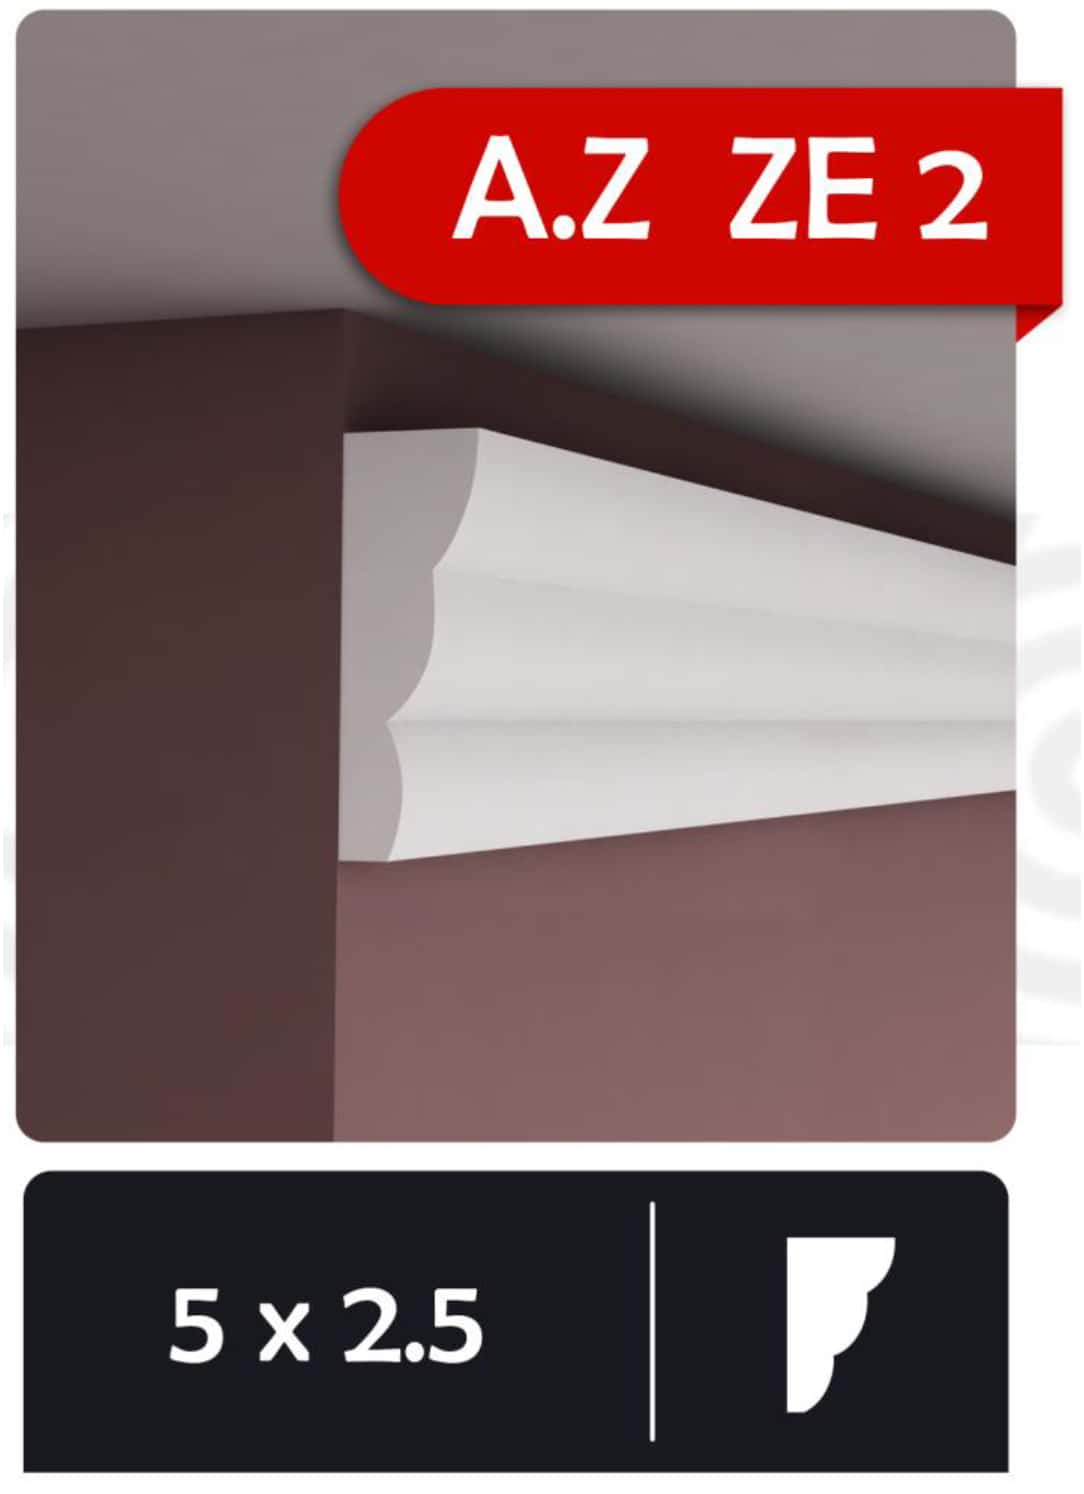 A.Z ZE 2 - ابزار گلویی (قاب بندی psp)